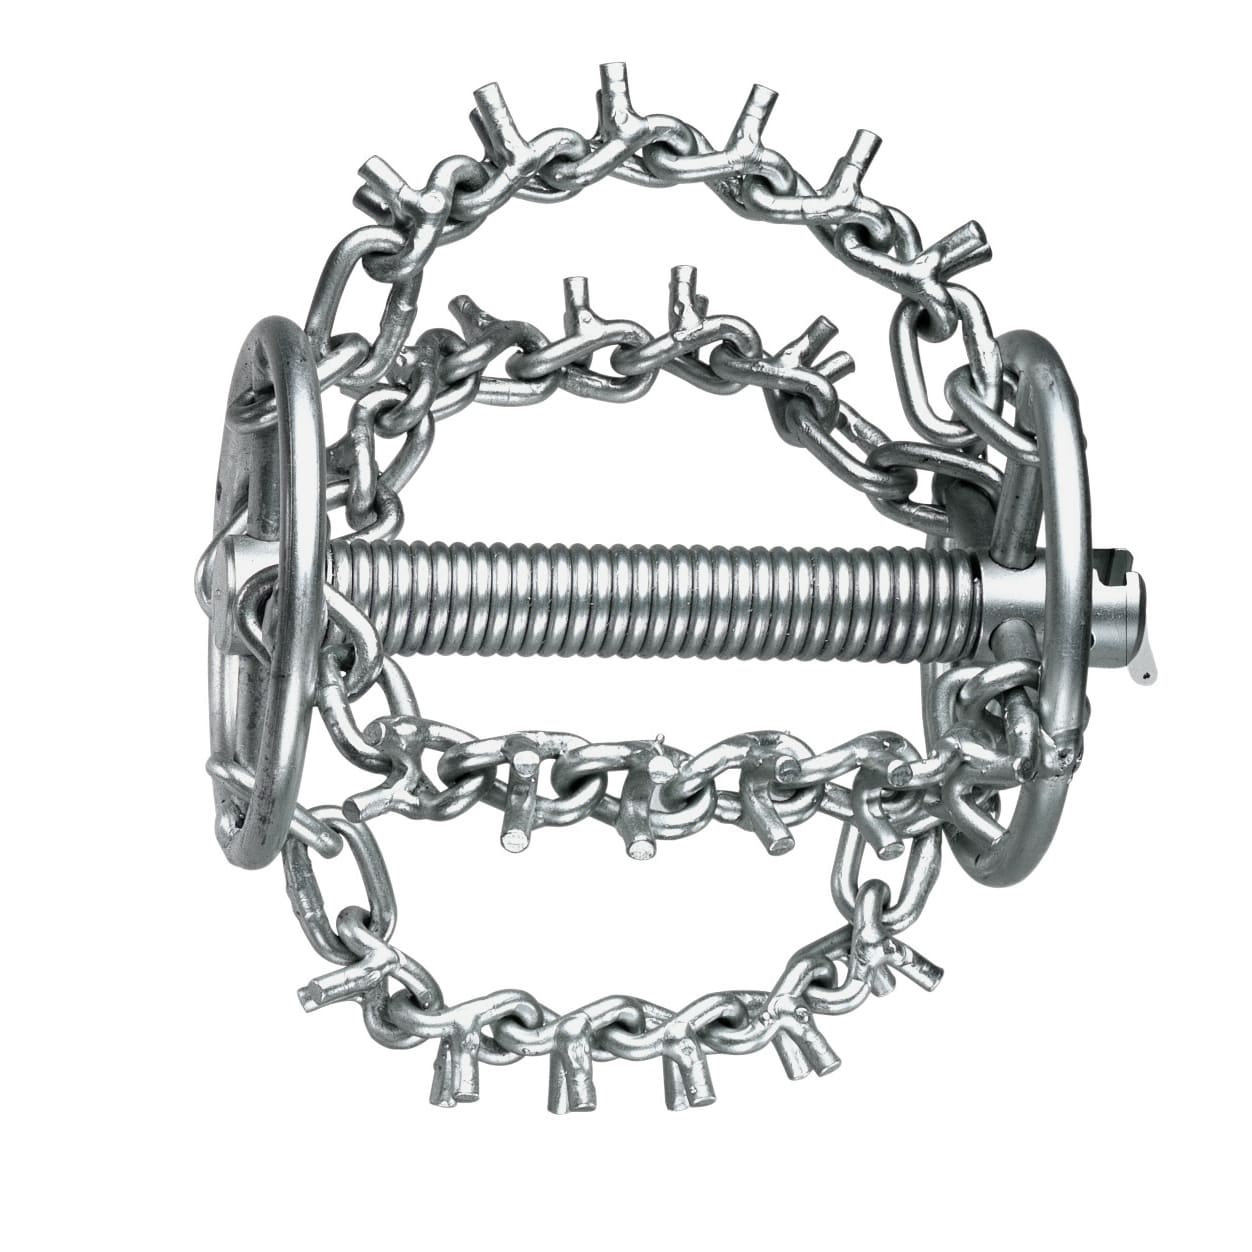 ROTHENBERGER Верижен инструмент с шипове 4 вериги и пръстен 22 мм (72286)